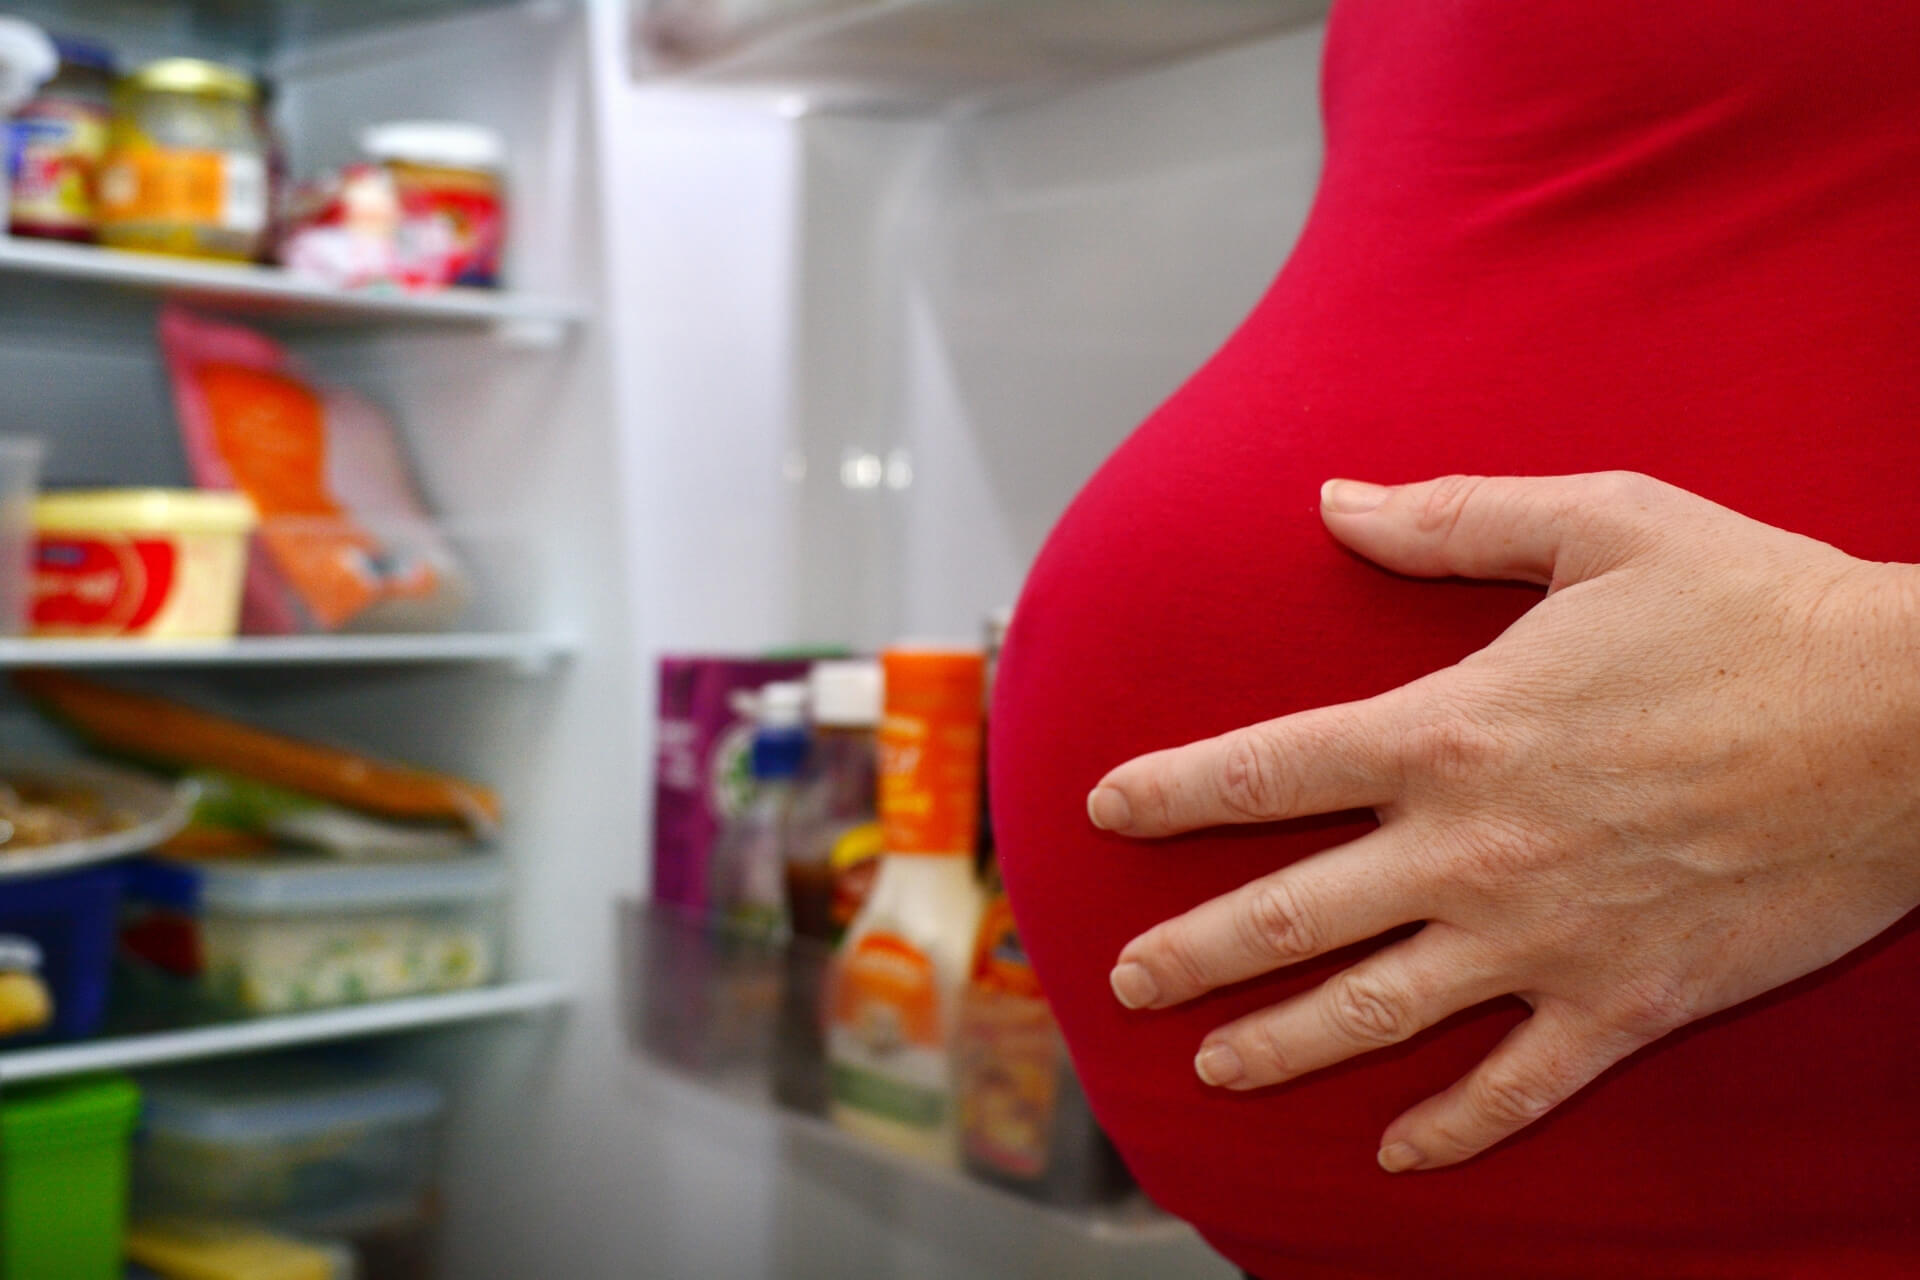 mangiare bresaola in gravidanza si può?